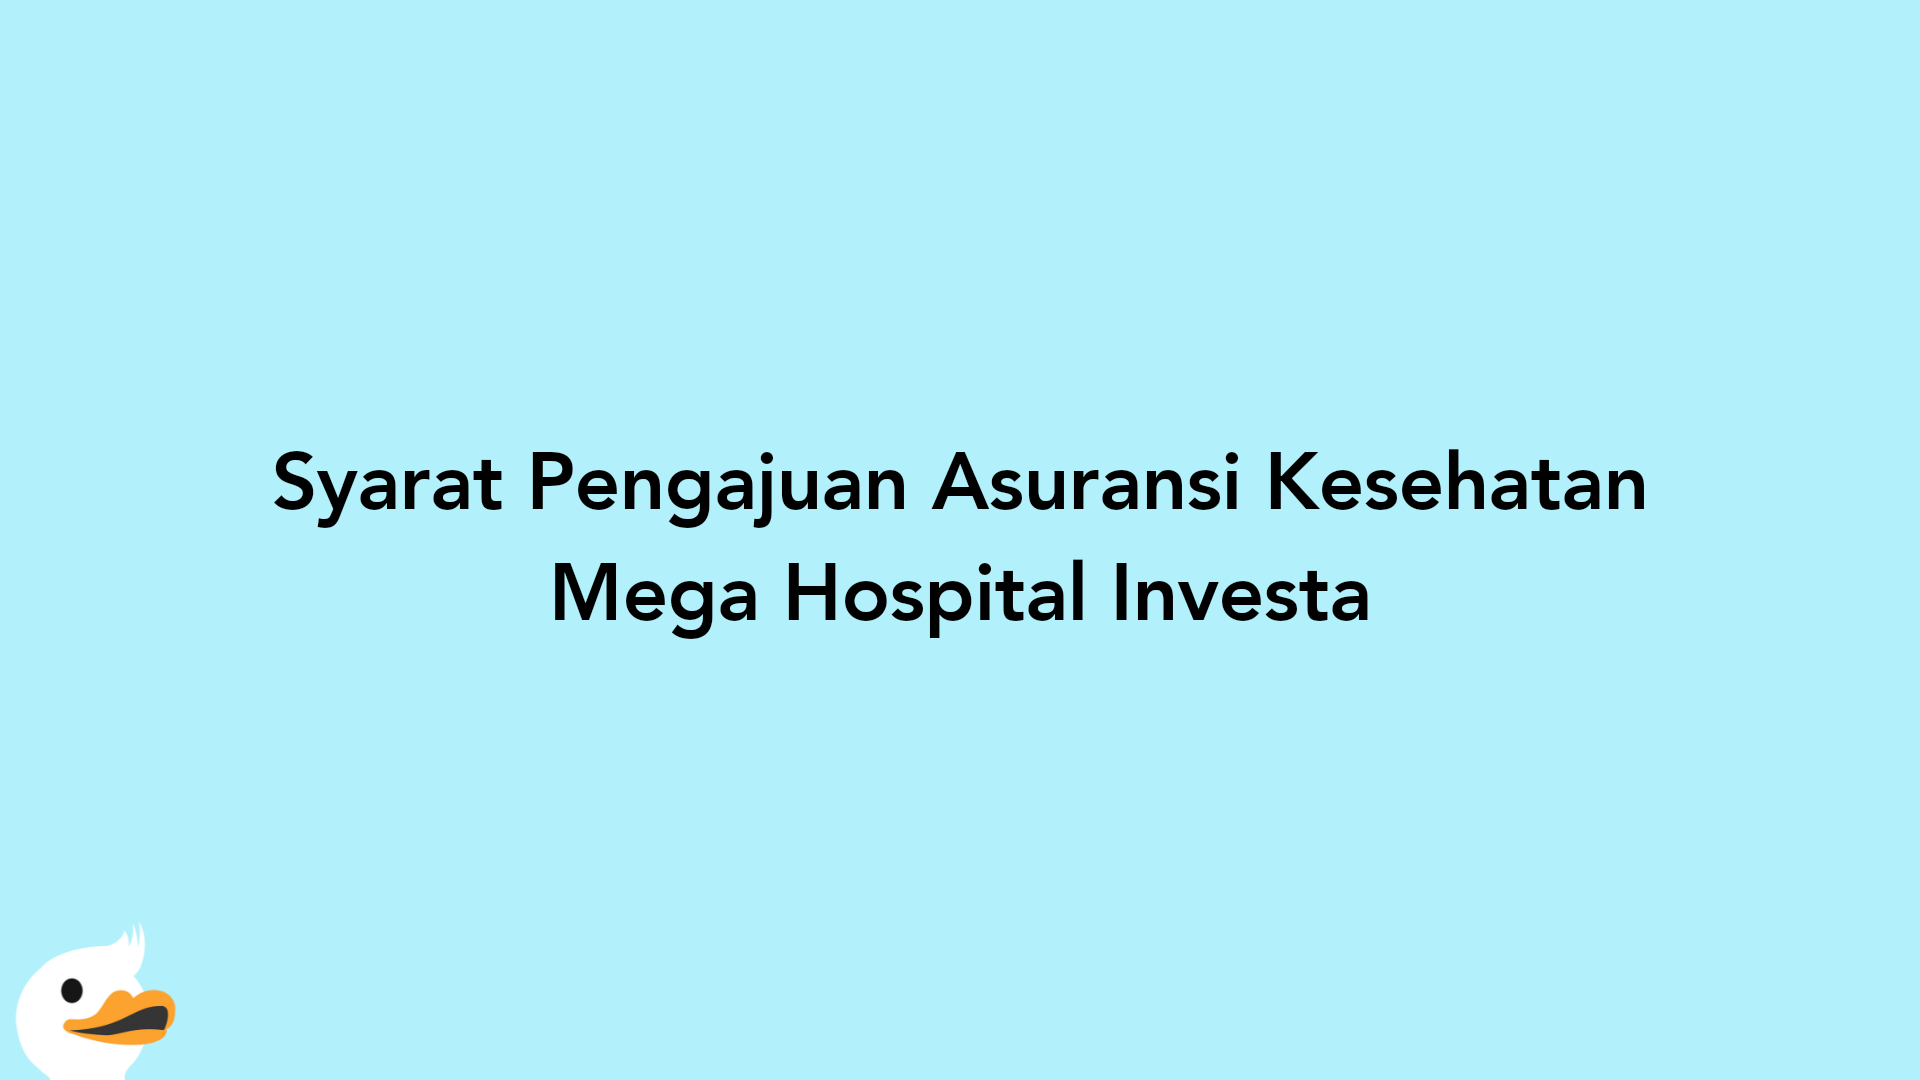 Syarat Pengajuan Asuransi Kesehatan Mega Hospital Investa